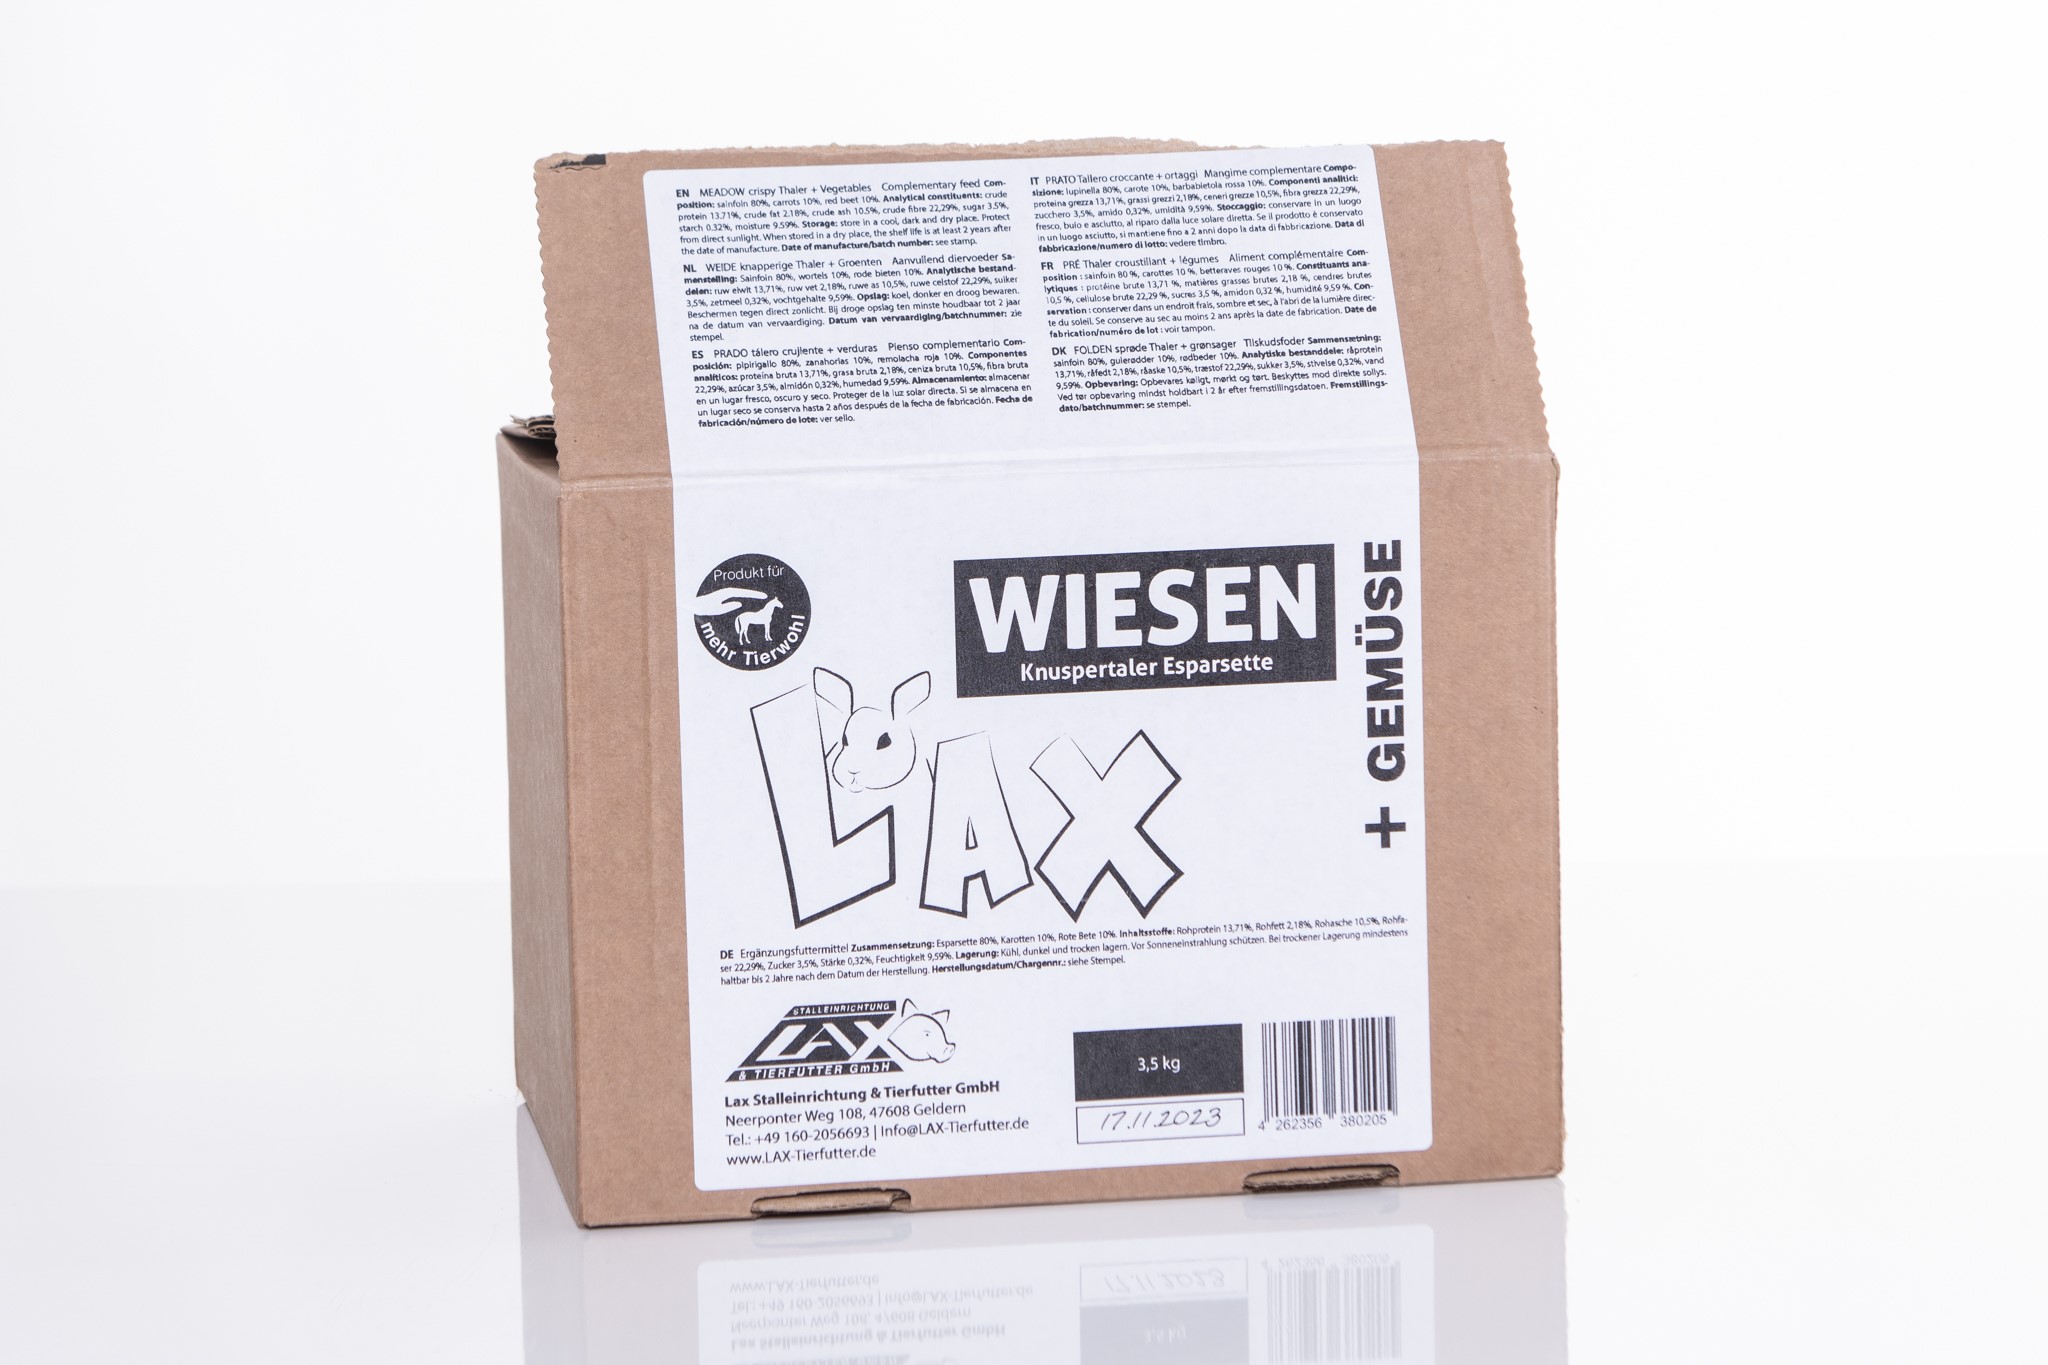 Lax Wiesen Knuspertaler - Vorratspack mit 20 Talern - 3,5 kg